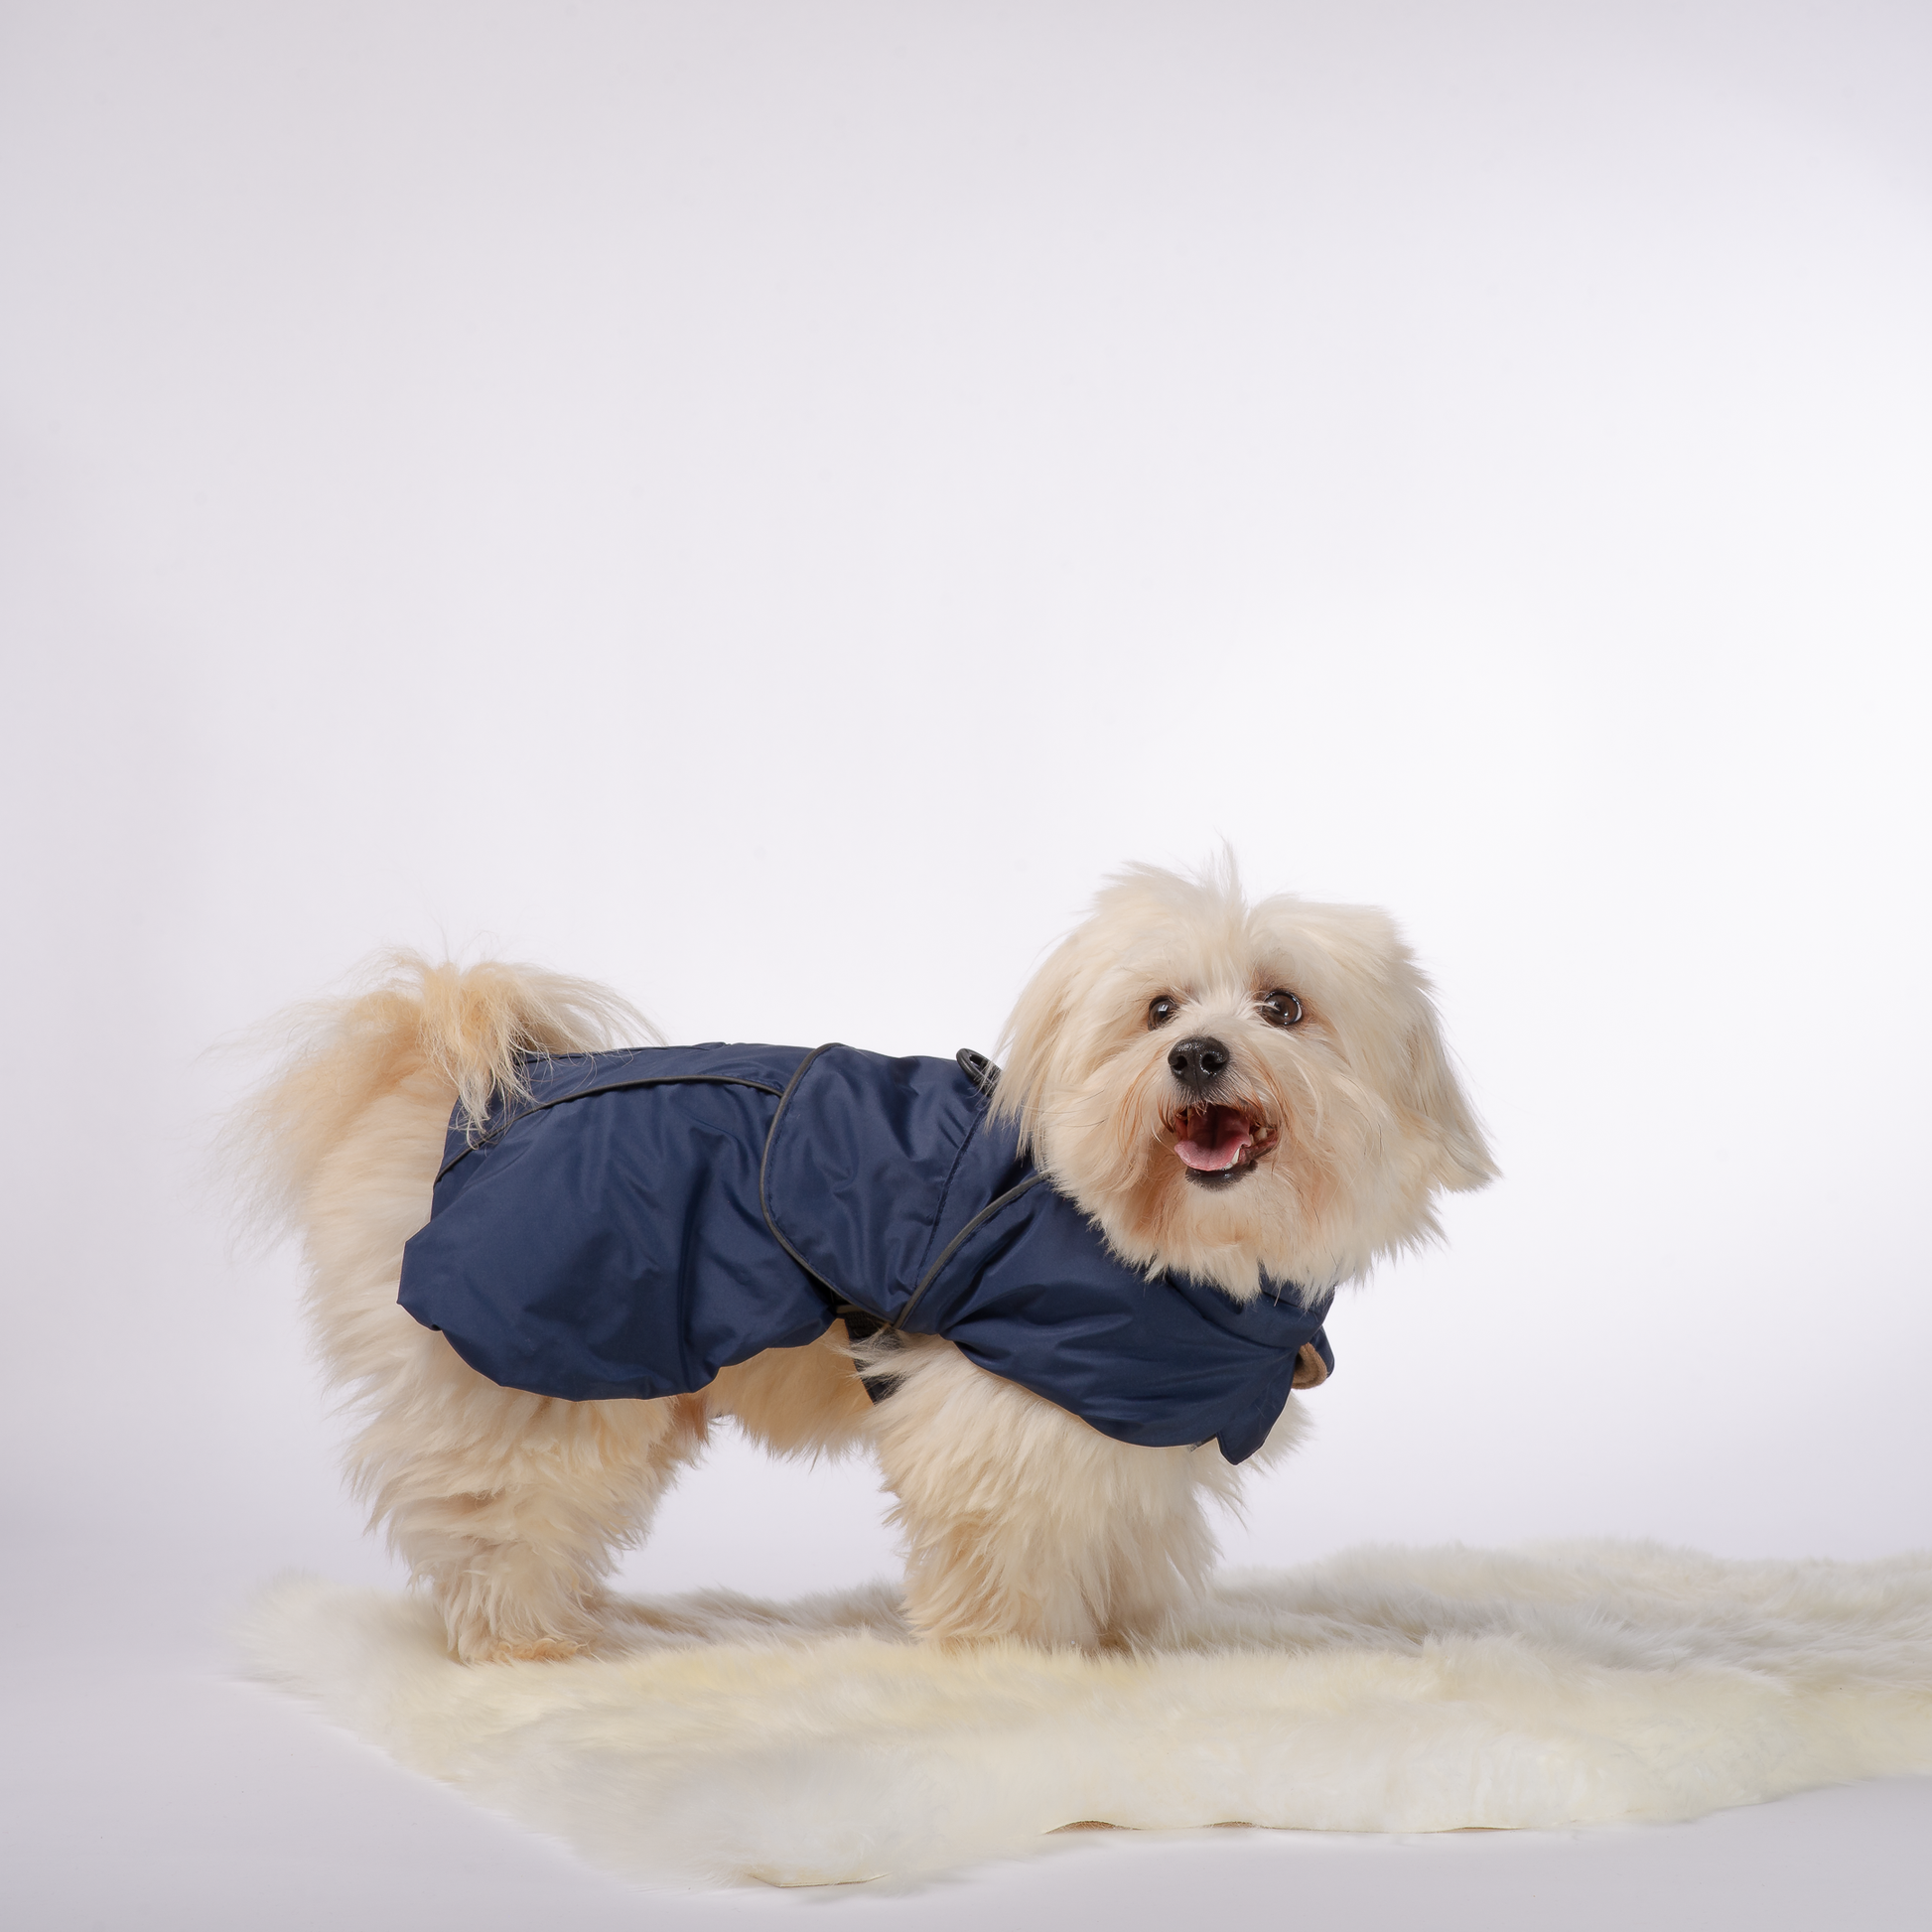 Integroitu valjas takki koirille, sivusta sininen. Harness dog coat, side picture navy blue